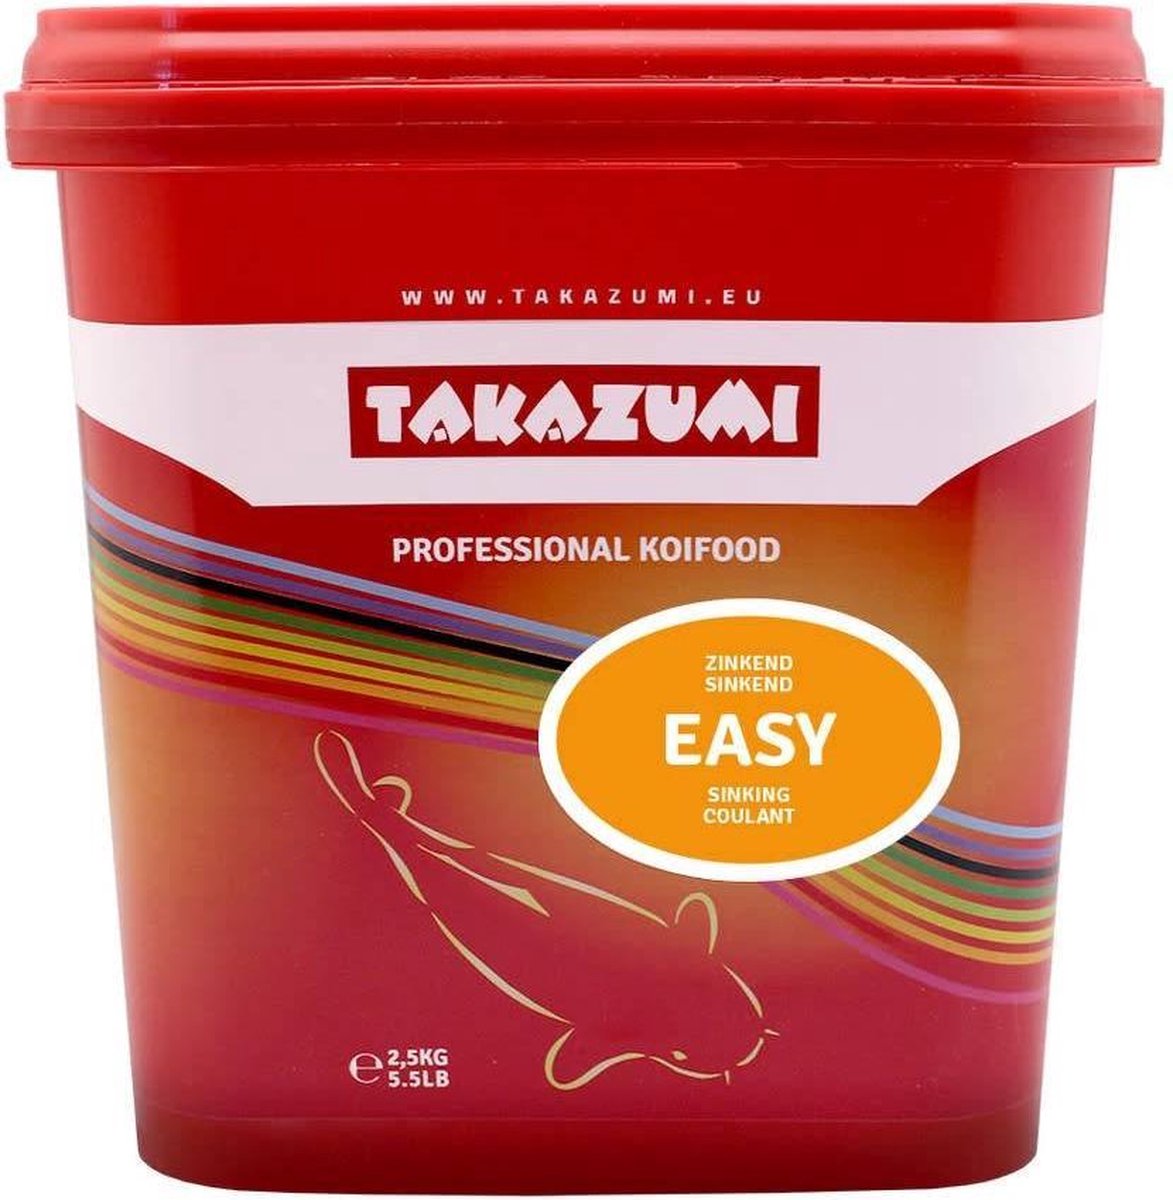 Takazumi easy - 1 kg